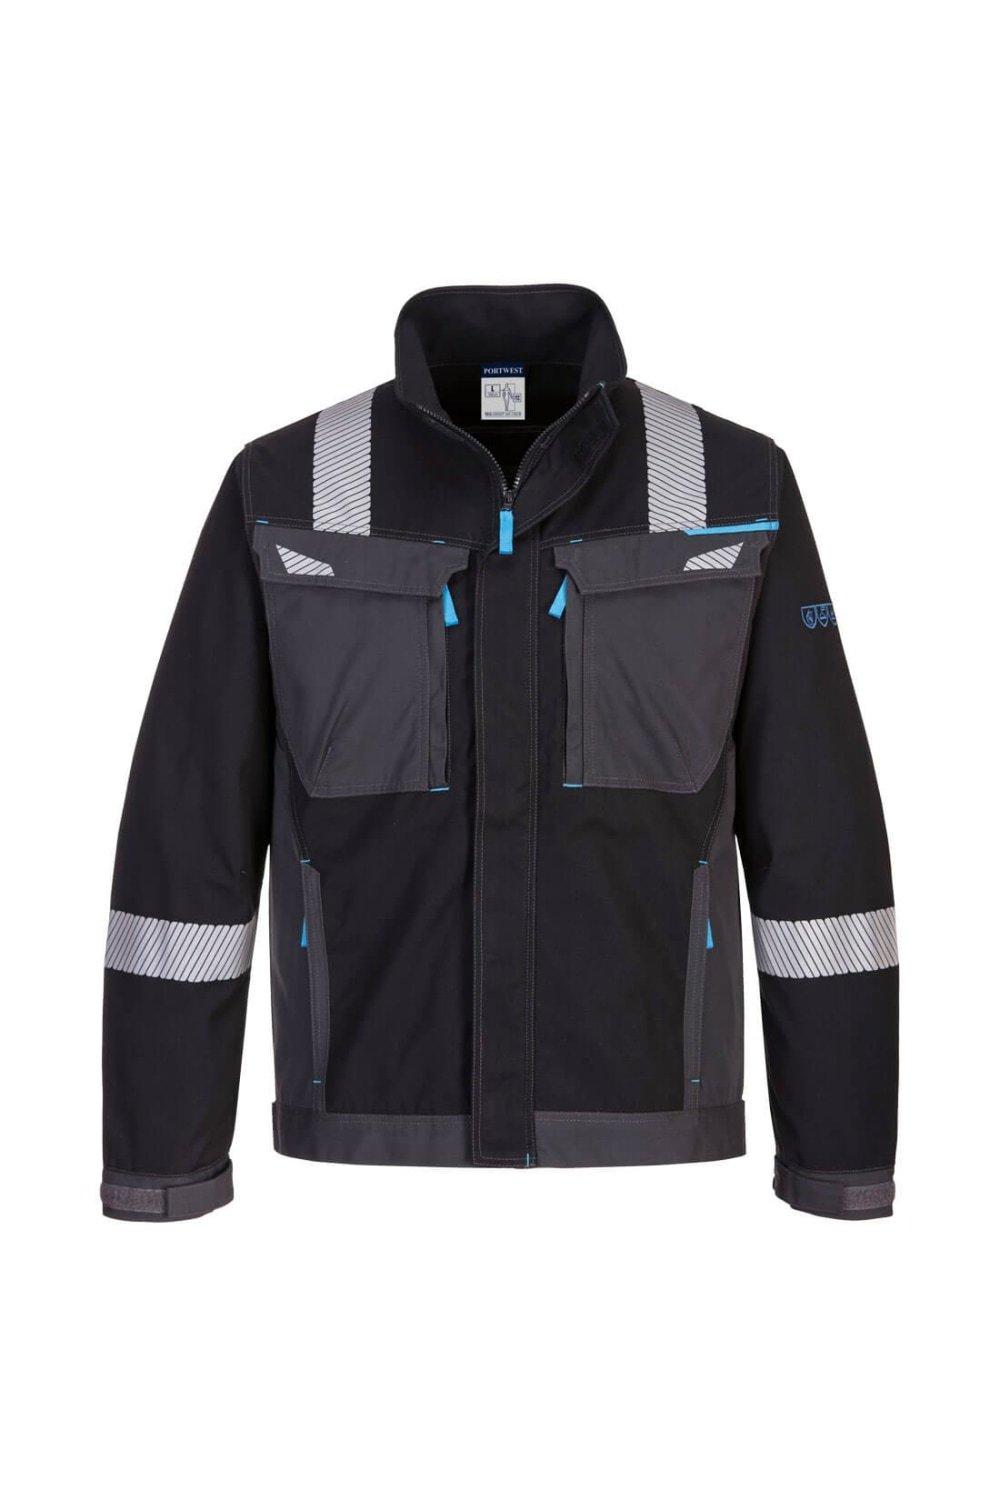 Огнестойкая рабочая куртка WX3 Portwest, черный